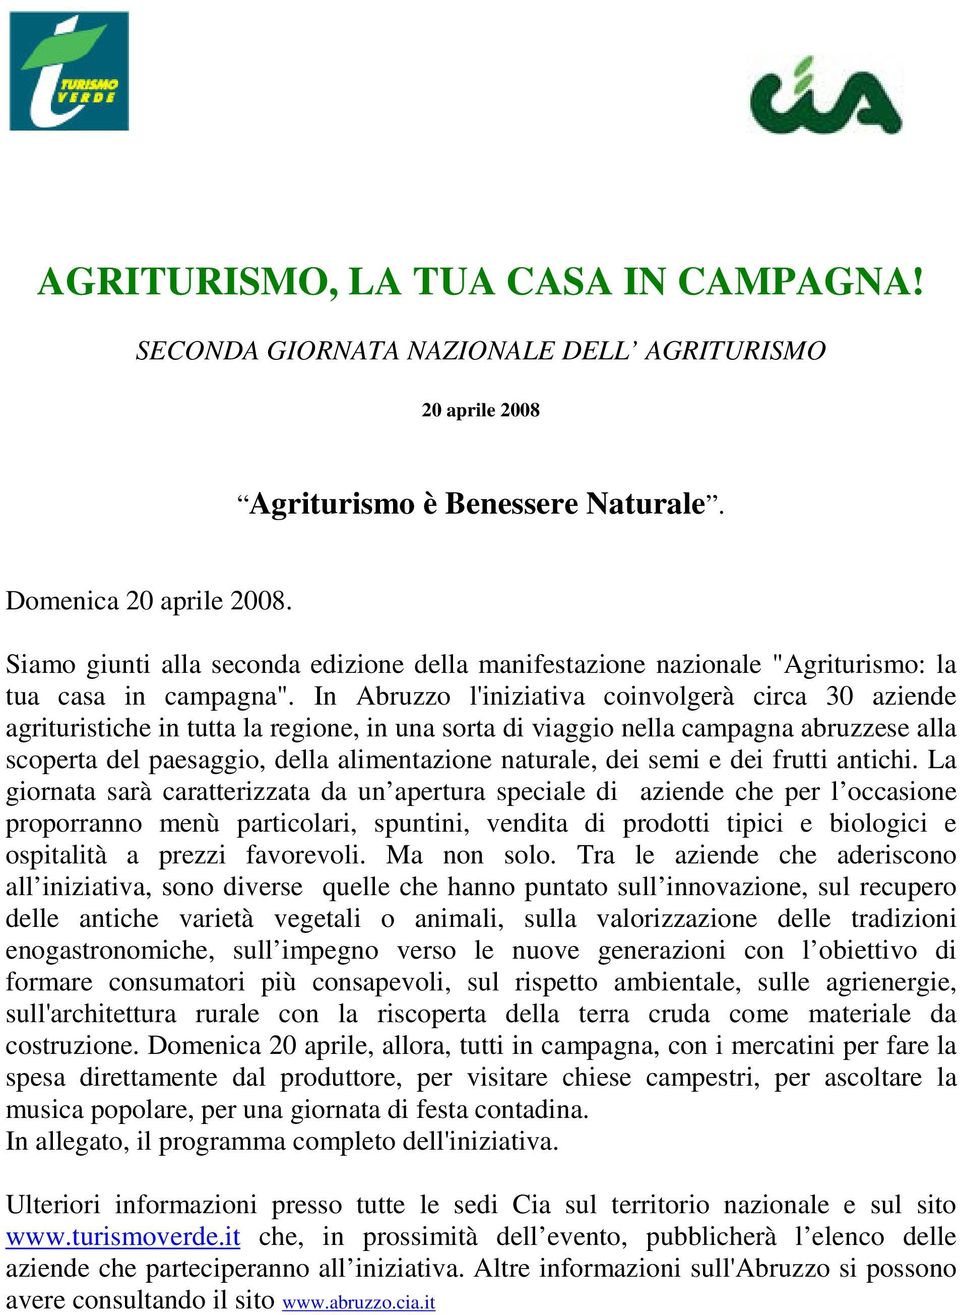 In Abruzzo l'iniziativa coinvolgerà circa 30 aziende agrituristiche in tutta la regione, in una sorta di viaggio nella campagna abruzzese alla scoperta del paesaggio, della alimentazione naturale,